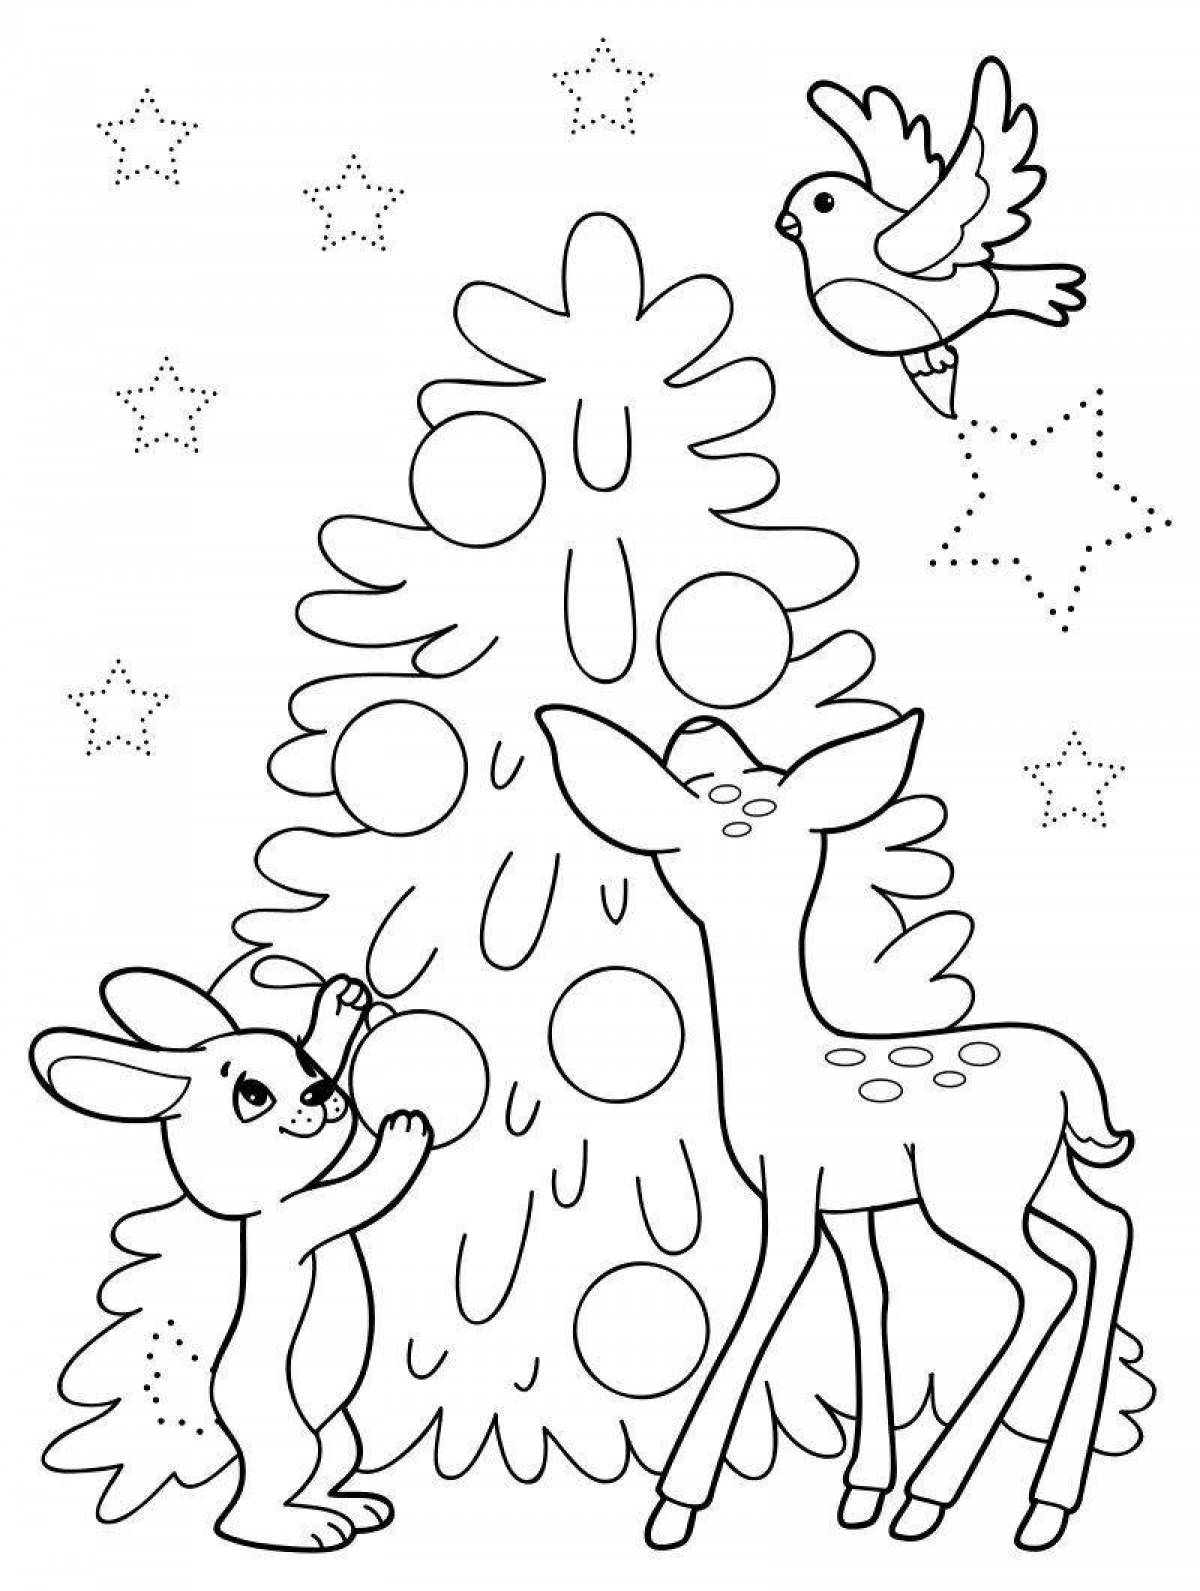 Раскраска яркая новогодняя елка для детей 5-6 лет